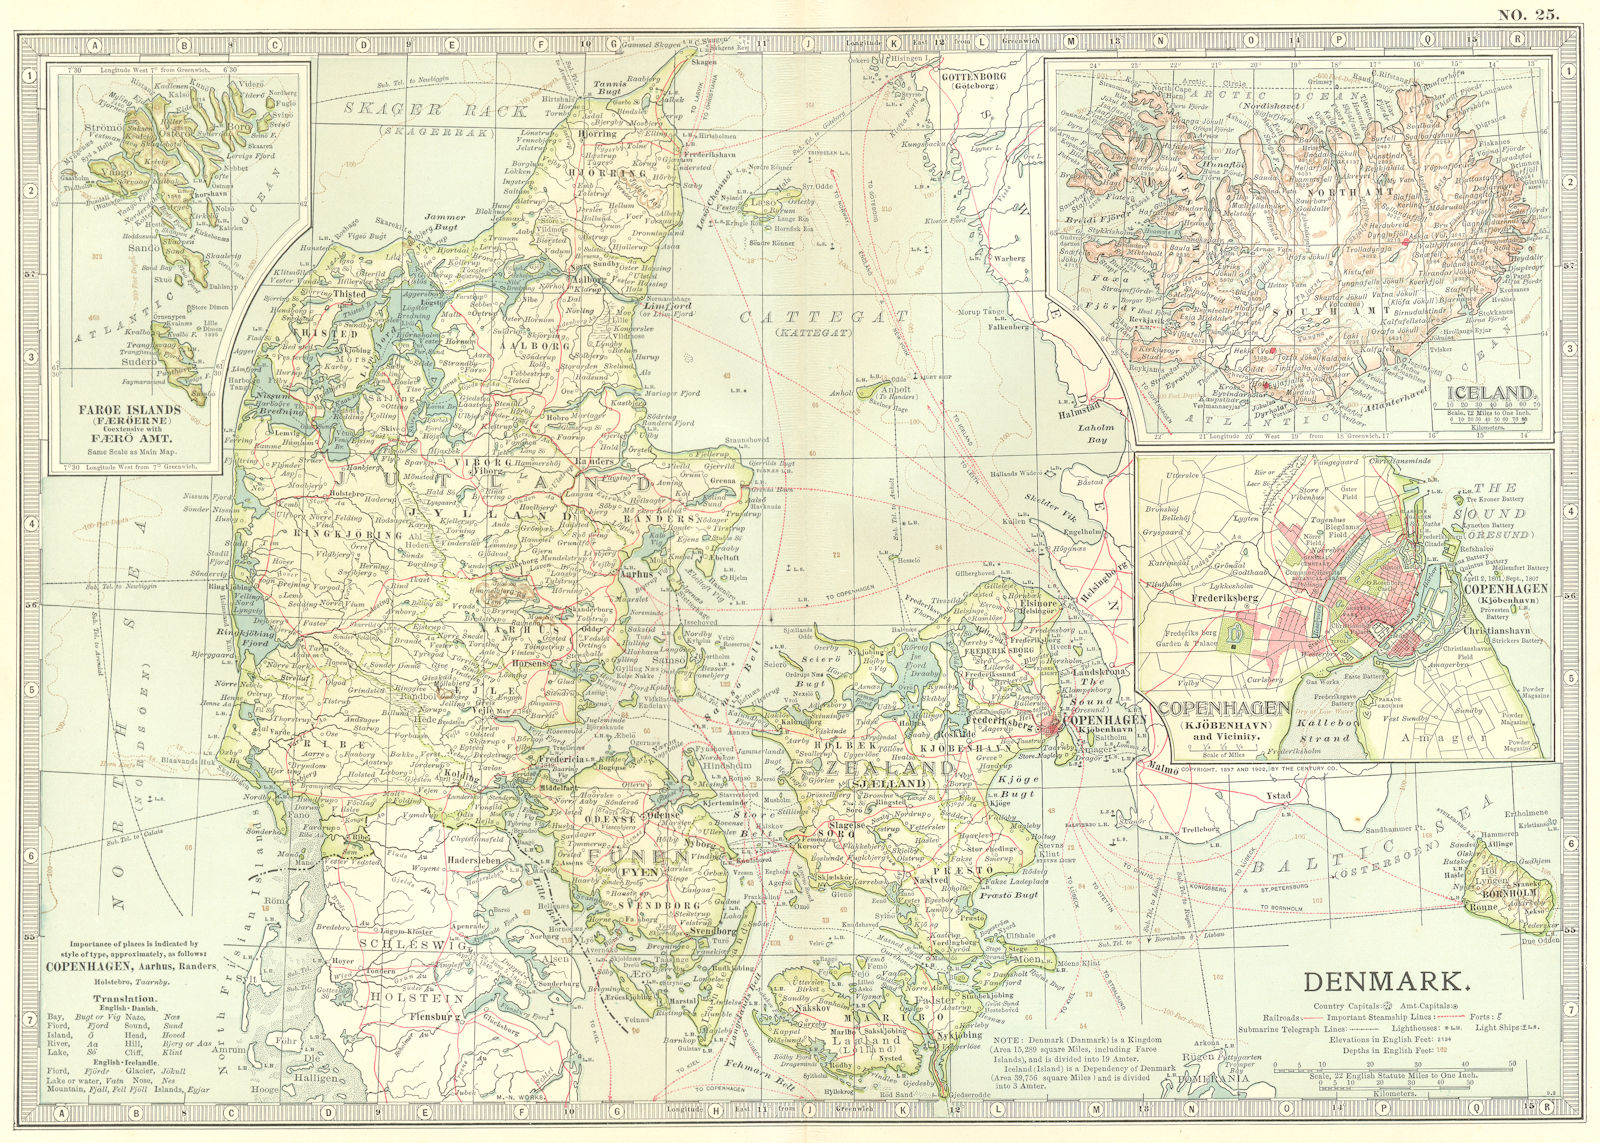 DENMARK ICELAND.Bornholm Copenhagen.Shows Schleswig wars battlefields 1903 map